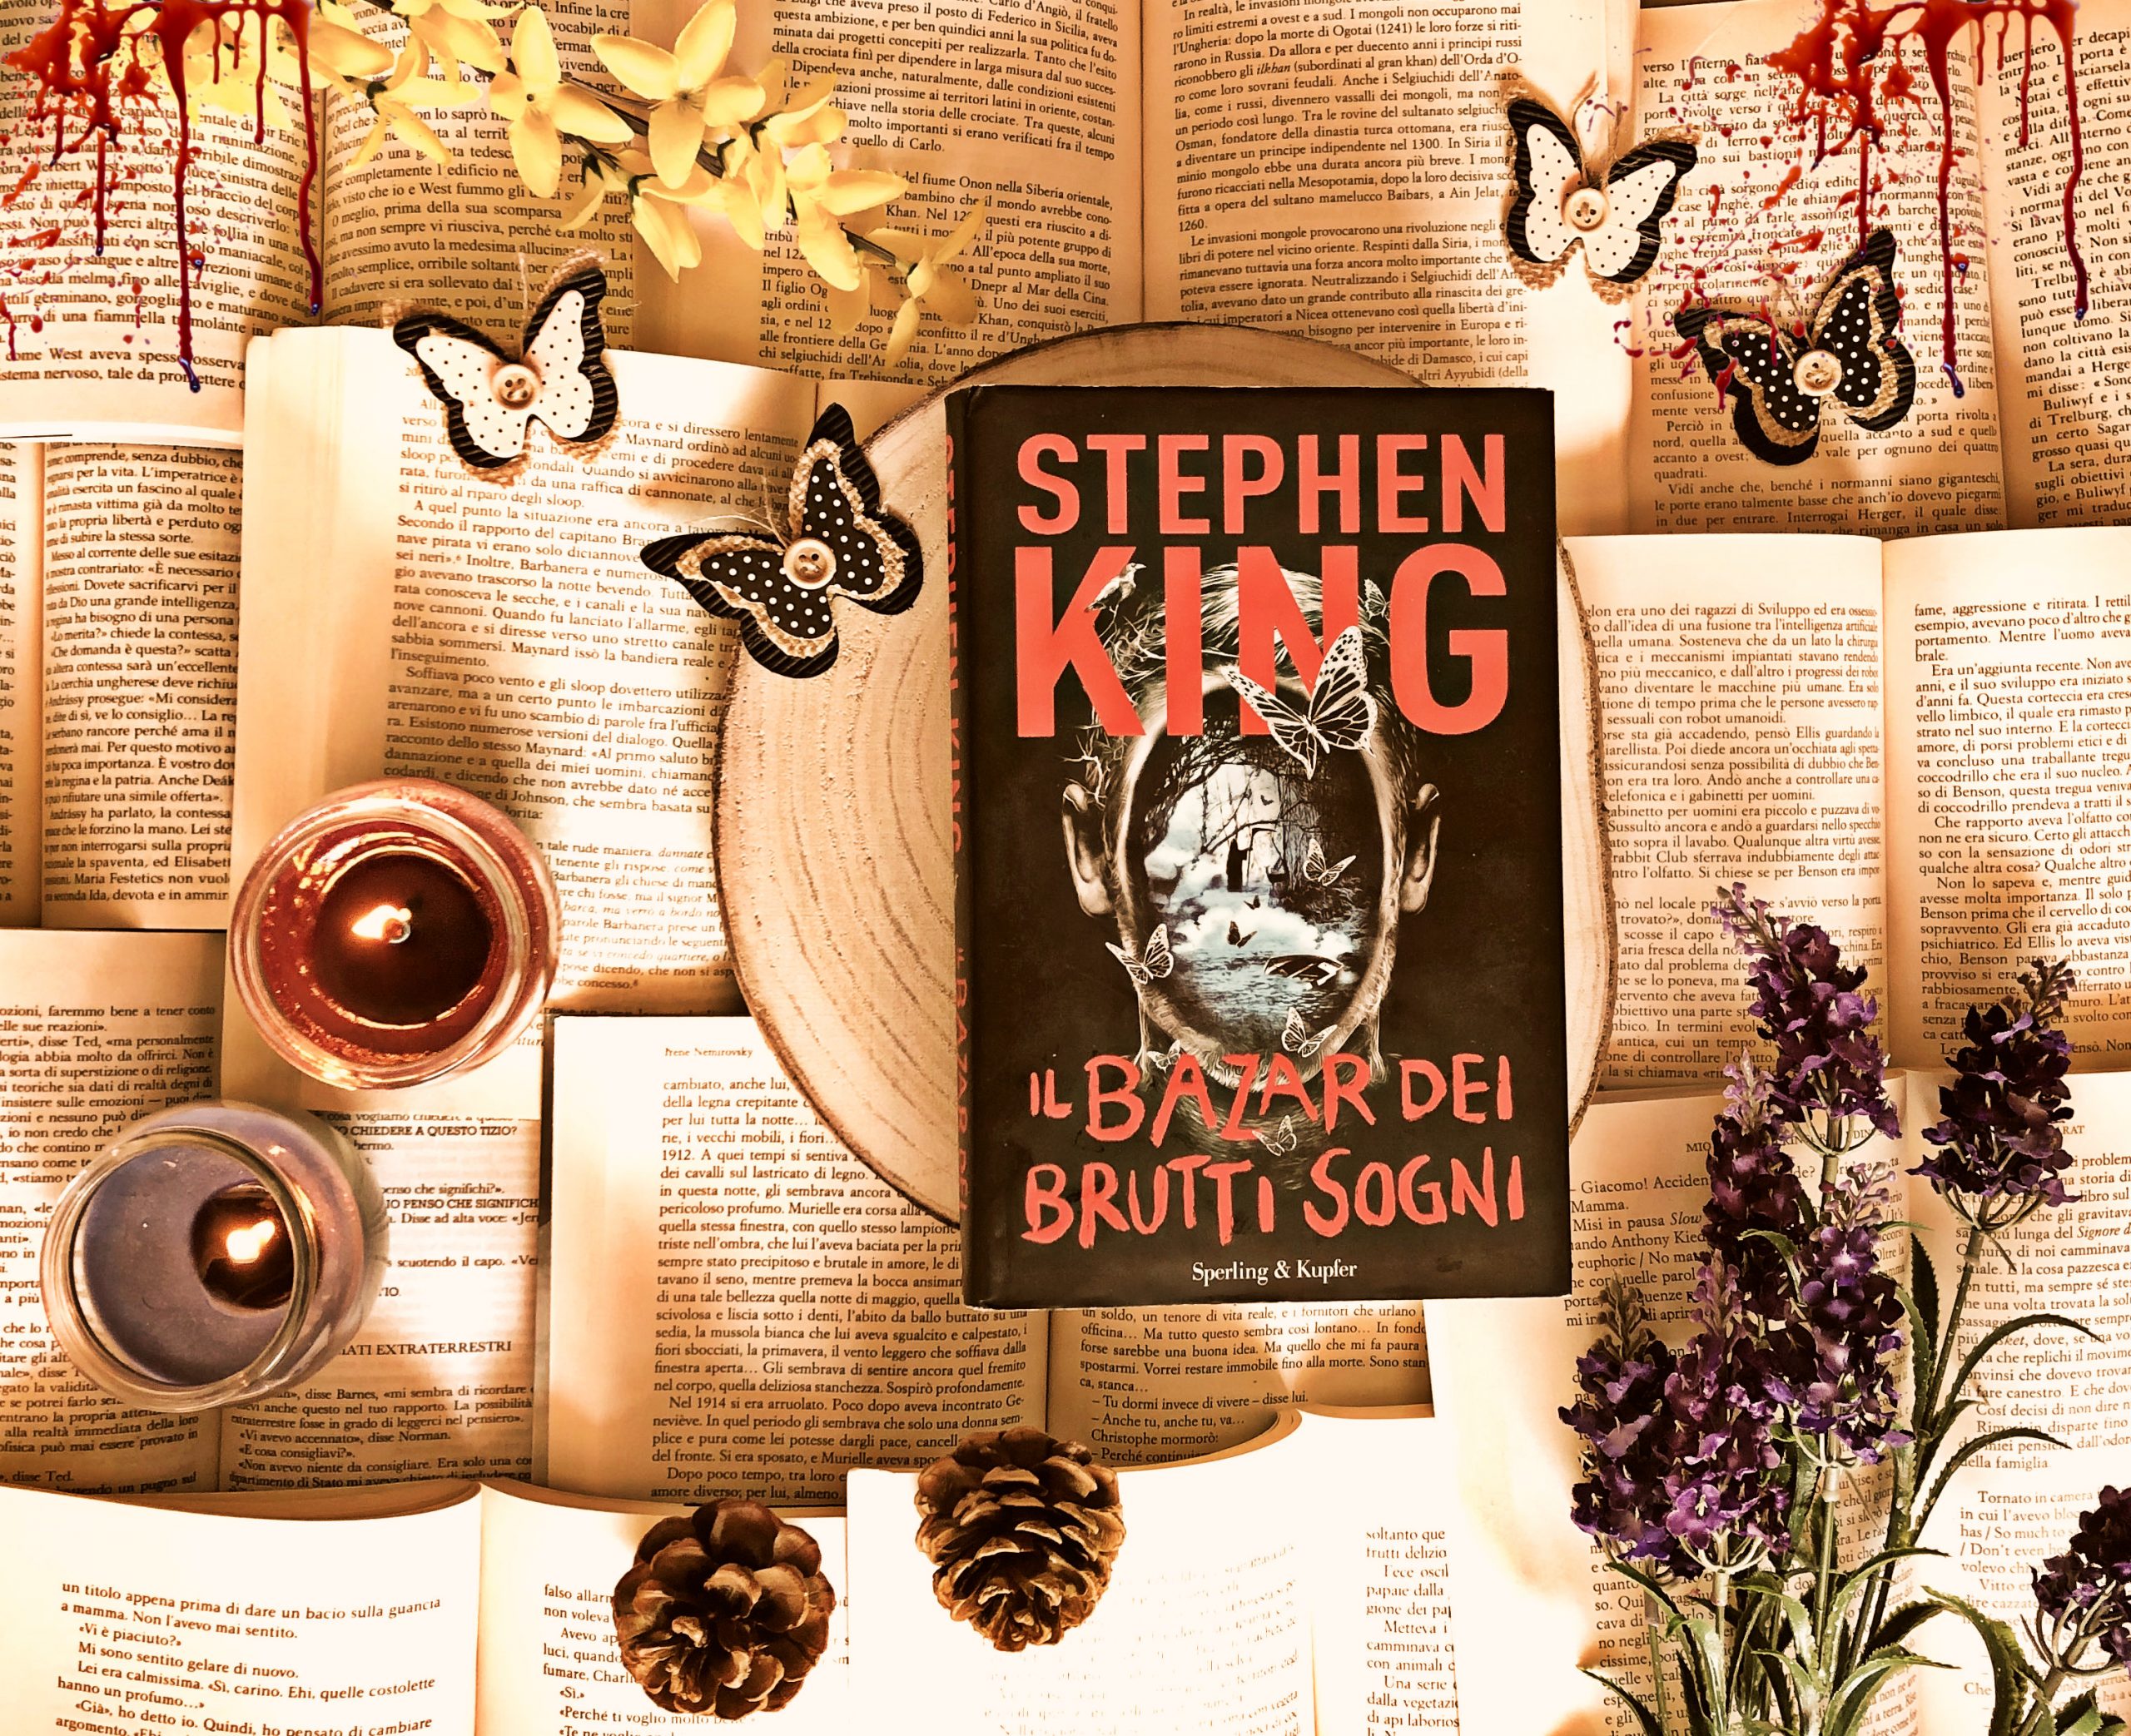 Il bazar dei brutti sogni – Stephen King